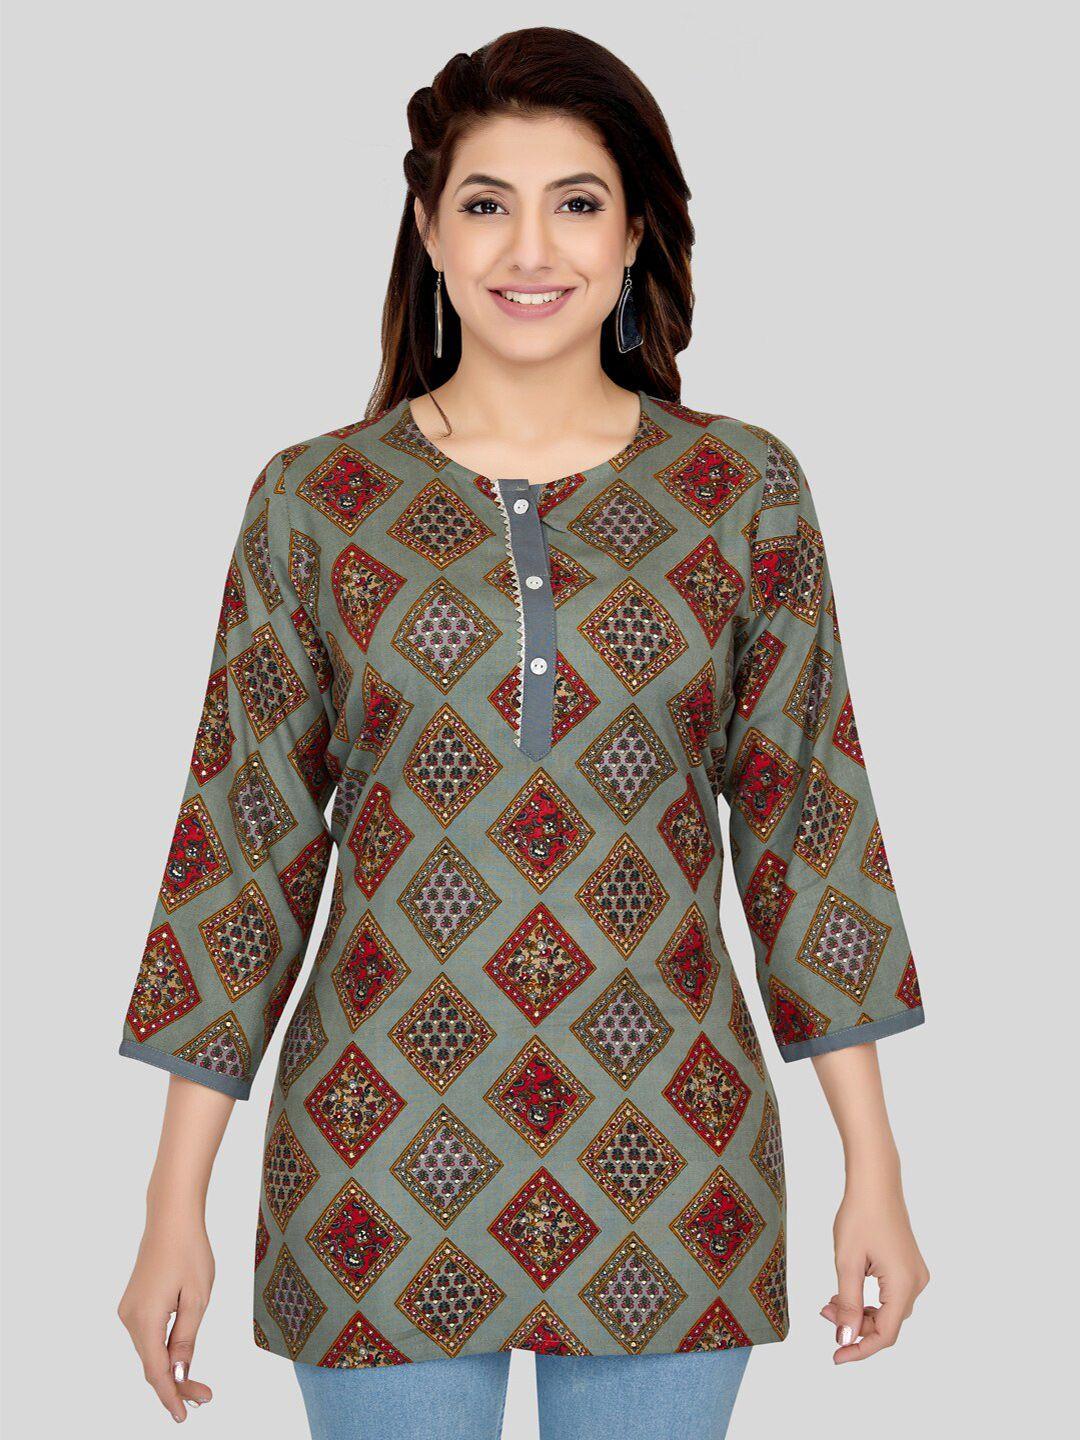 saree swarg grey & brown ethnic motifs printed kurti